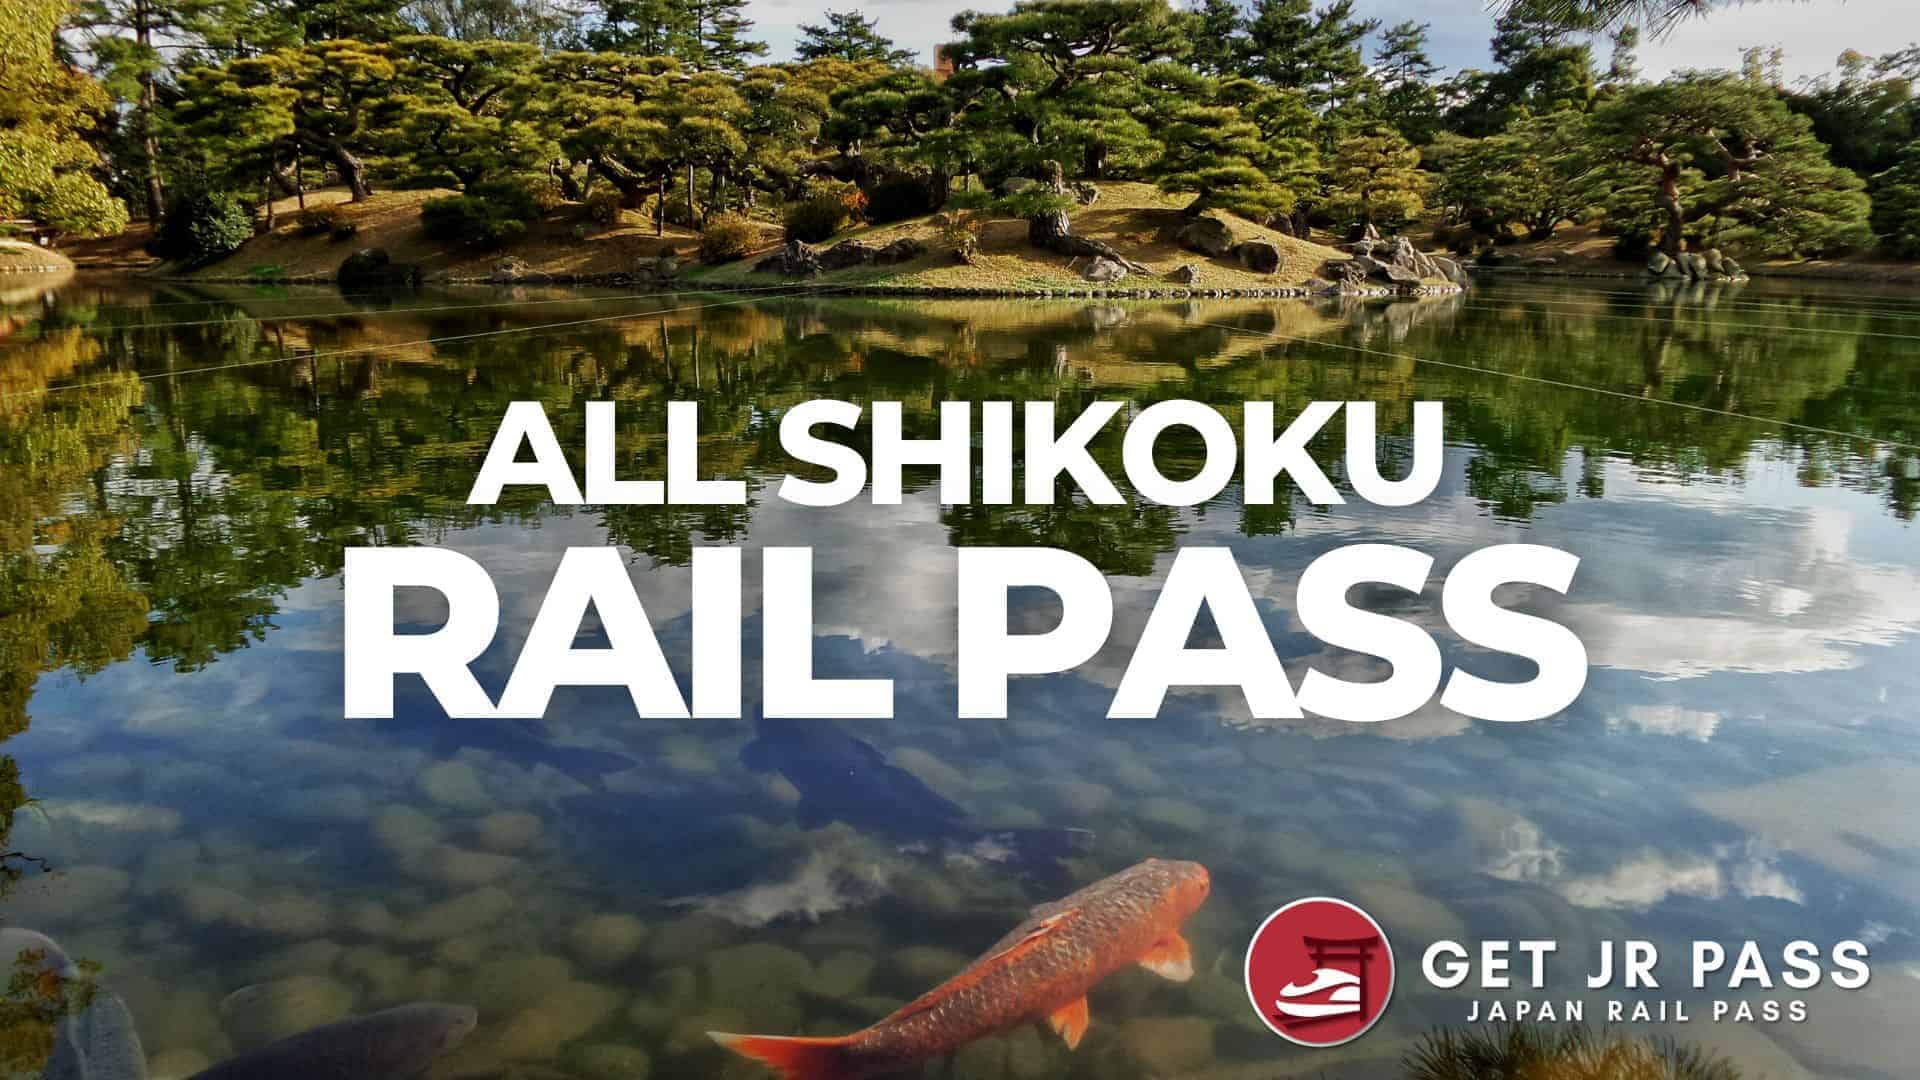 All shikoku rail pass